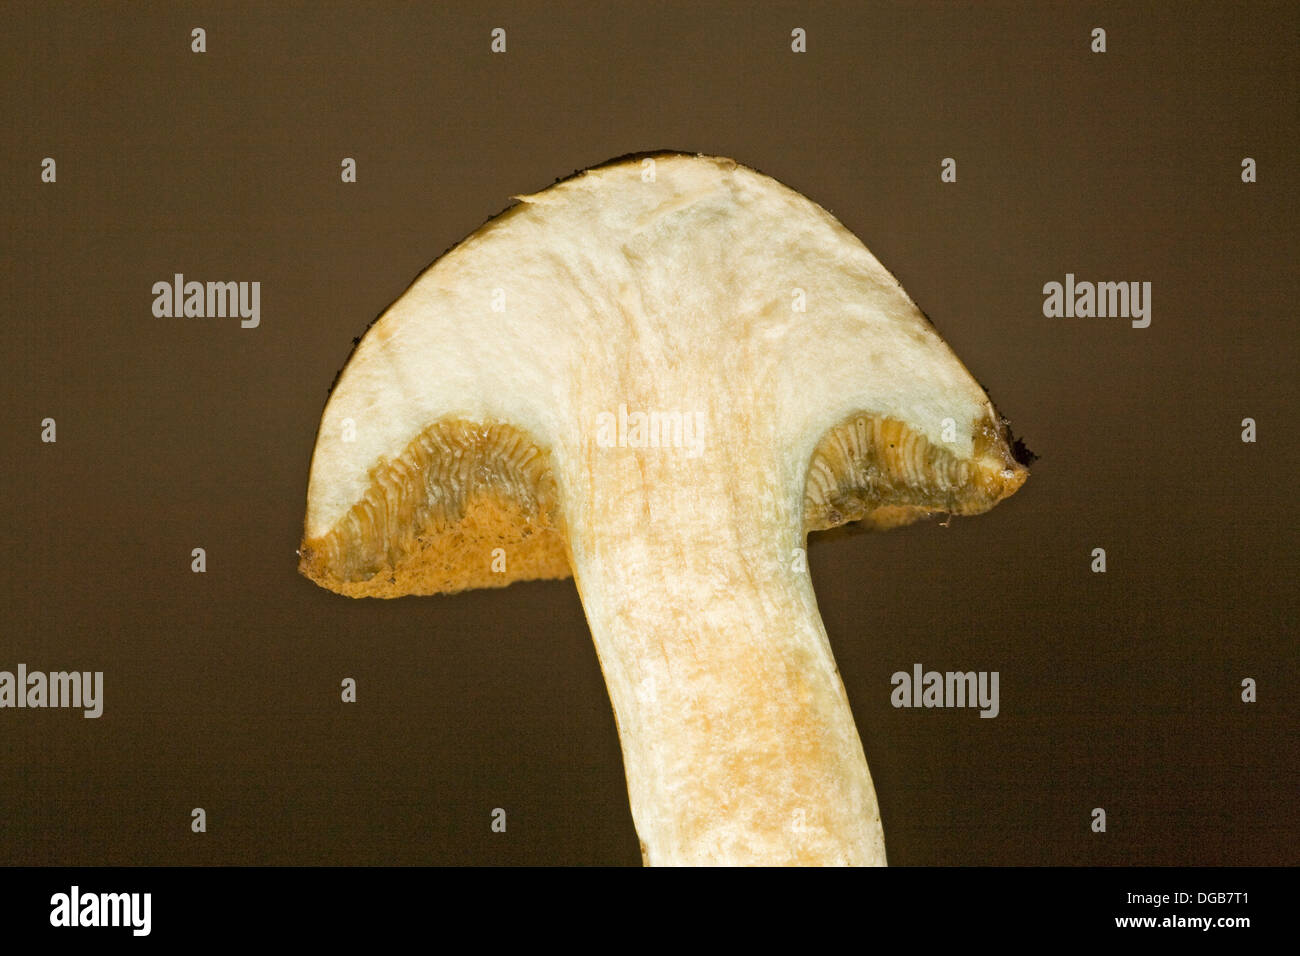 Close up of a pored or sponge mushroom Stock Photo